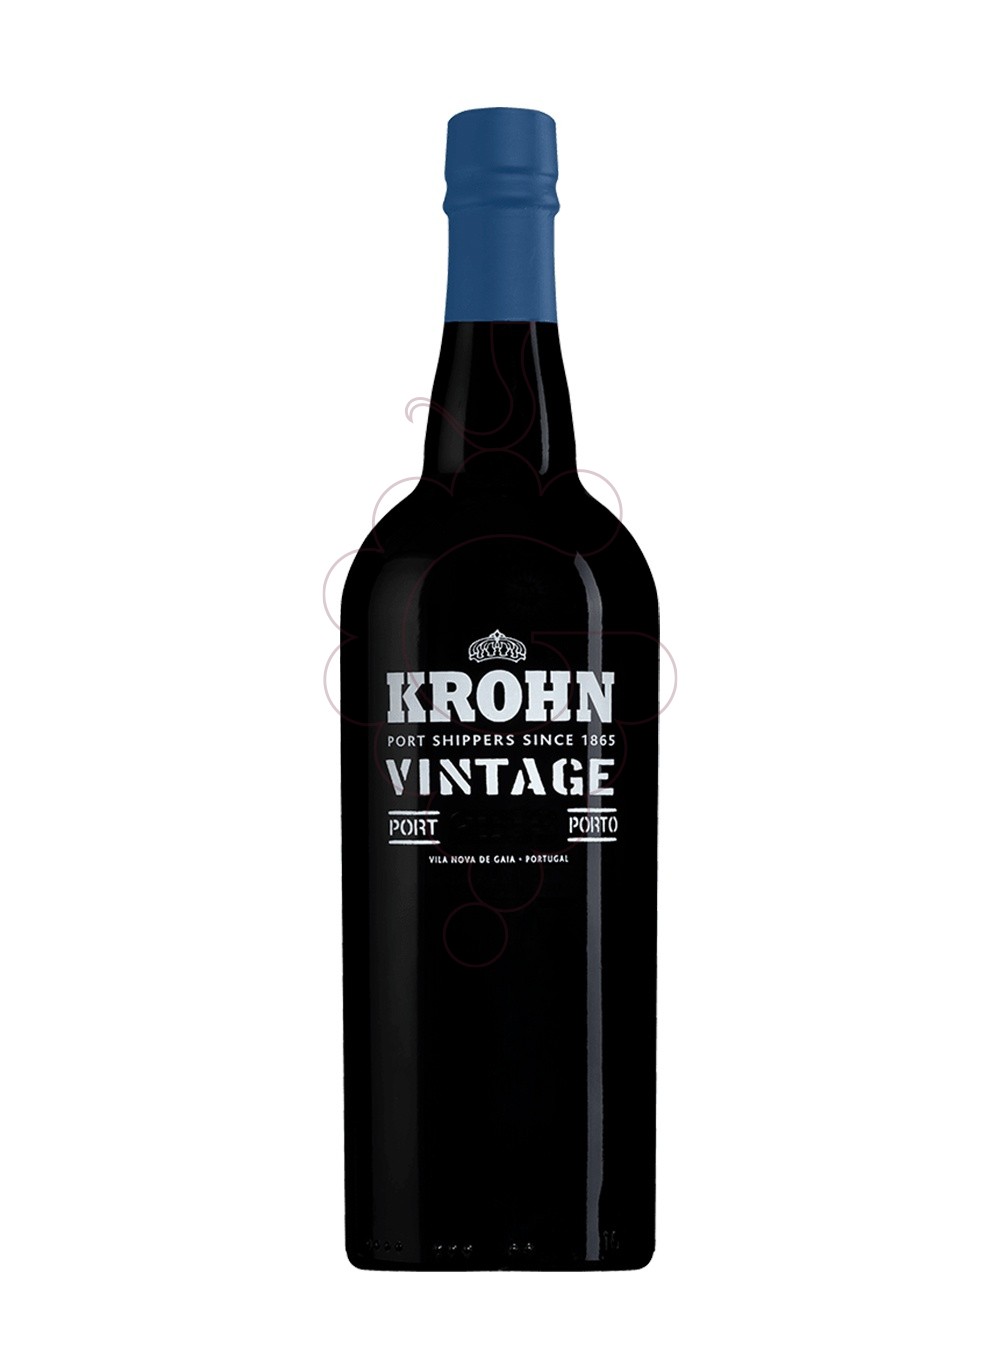 Foto Krohn vintage 2009 75 cl vino generoso